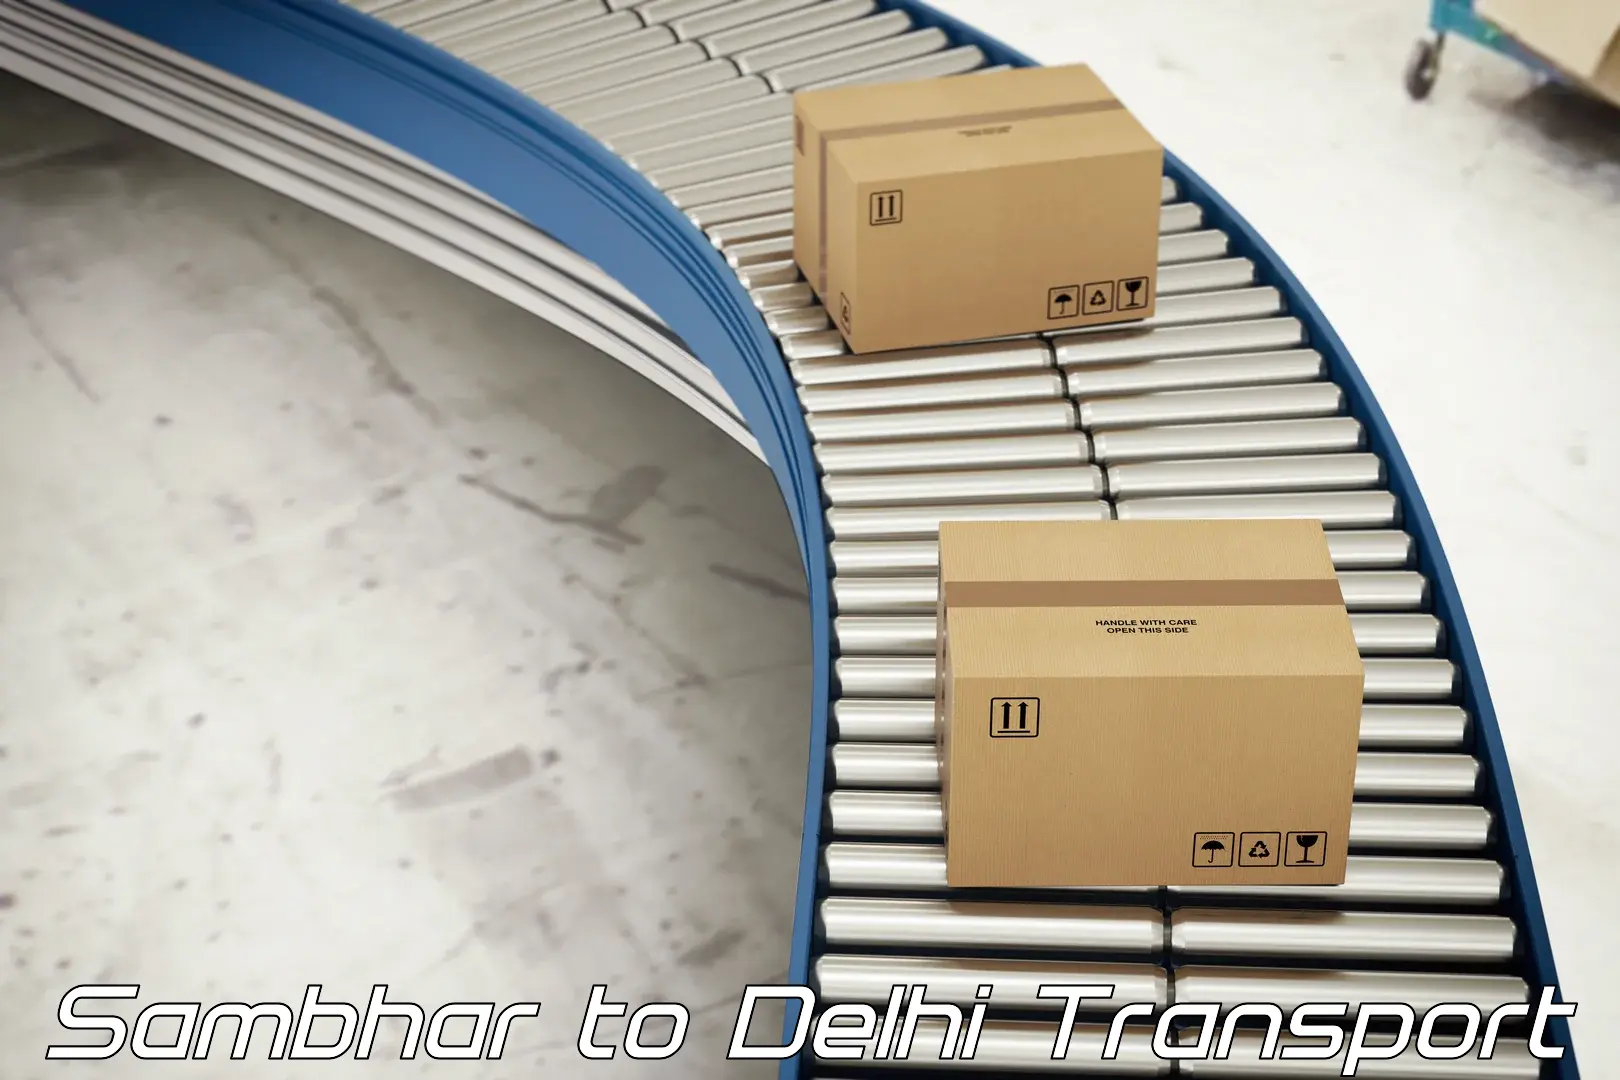 Two wheeler parcel service Sambhar to Delhi